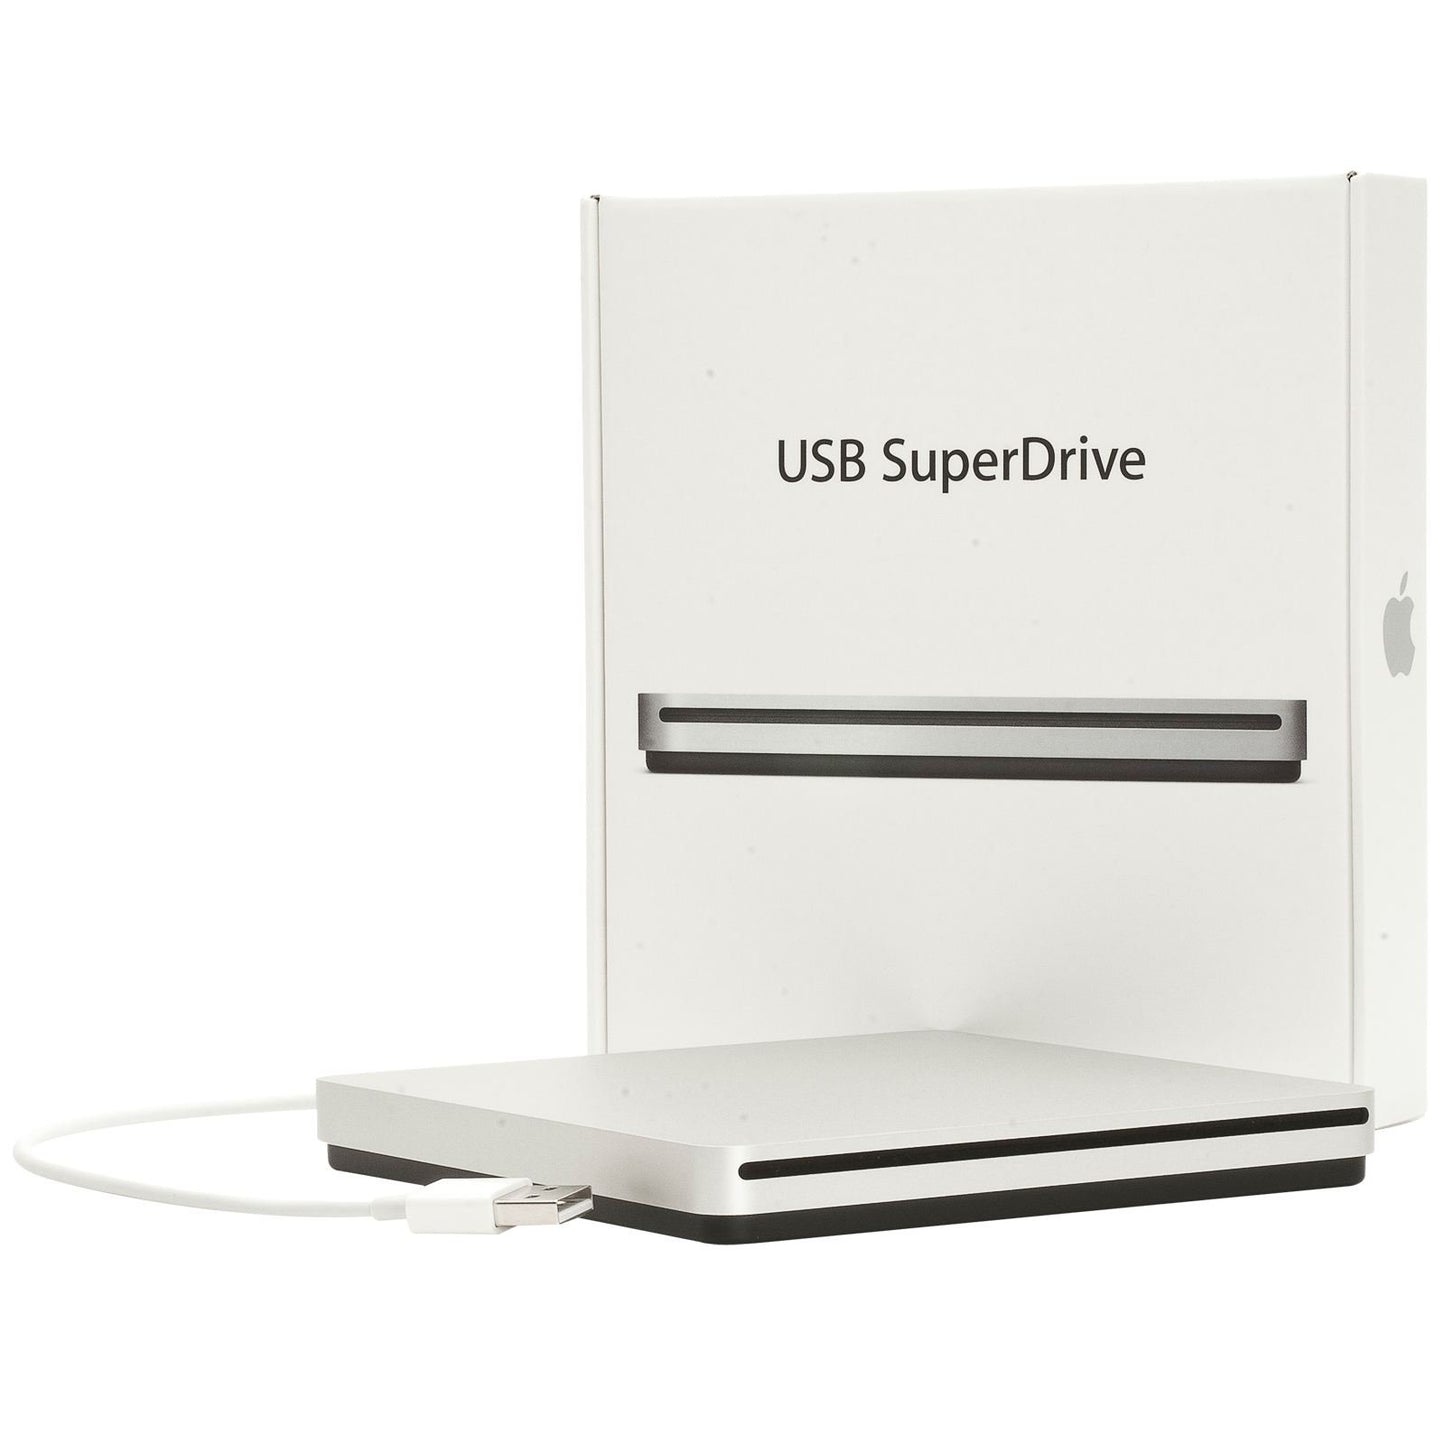 قرص التخزين USB SuperDrive‏ من Apple